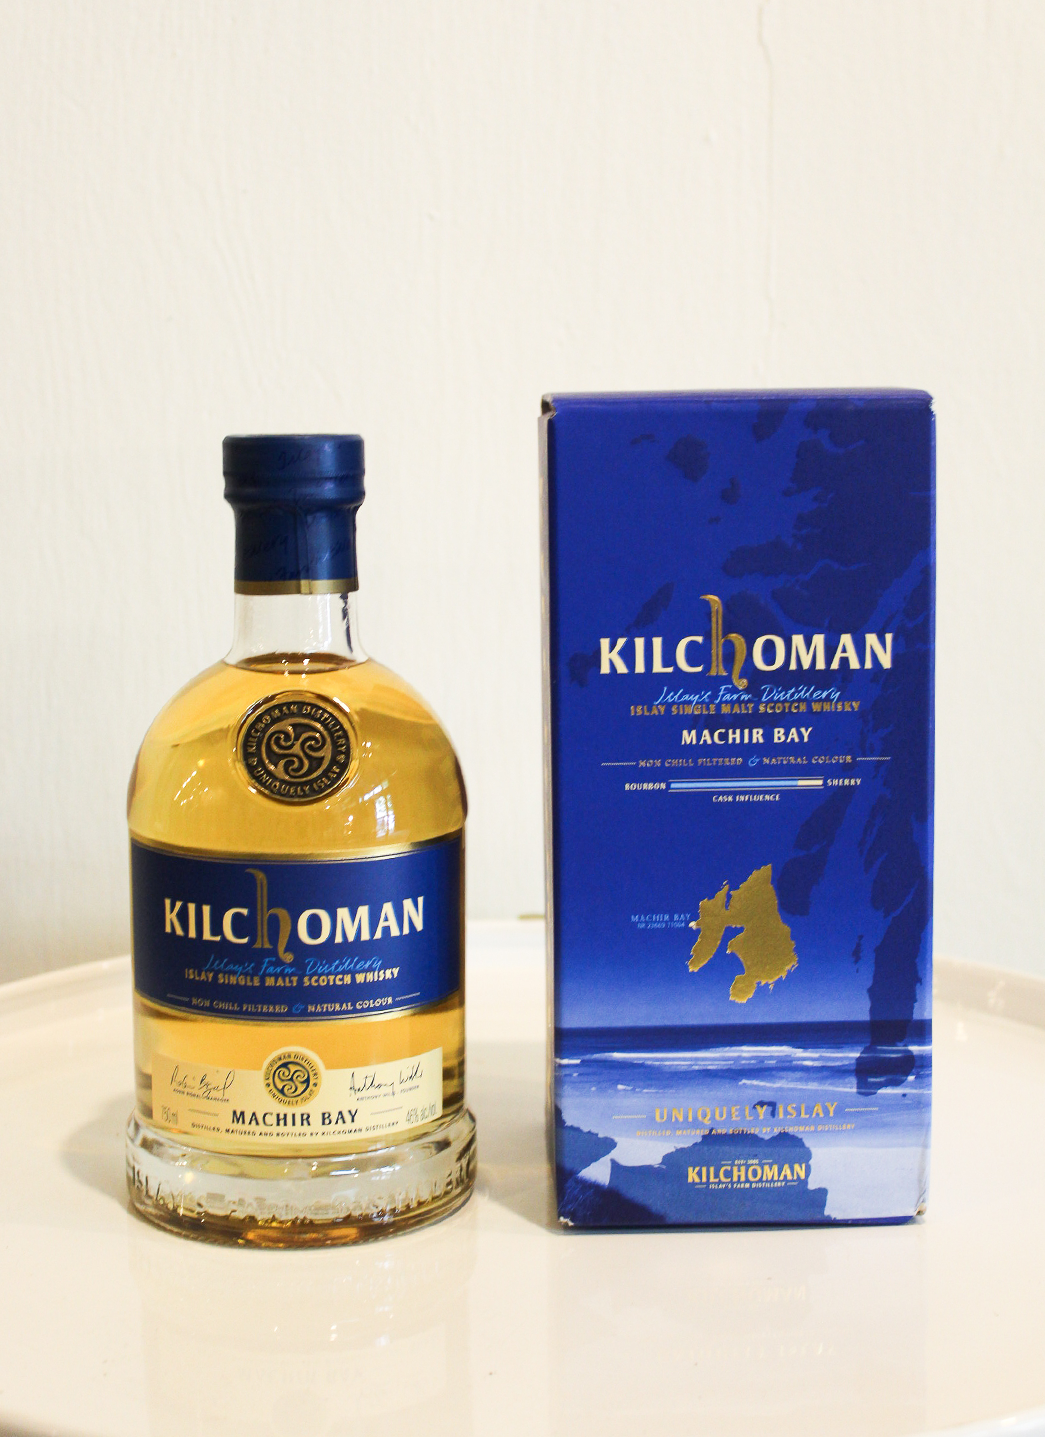 Kilchoman Machir Bay Single Malt Scotch Whisky